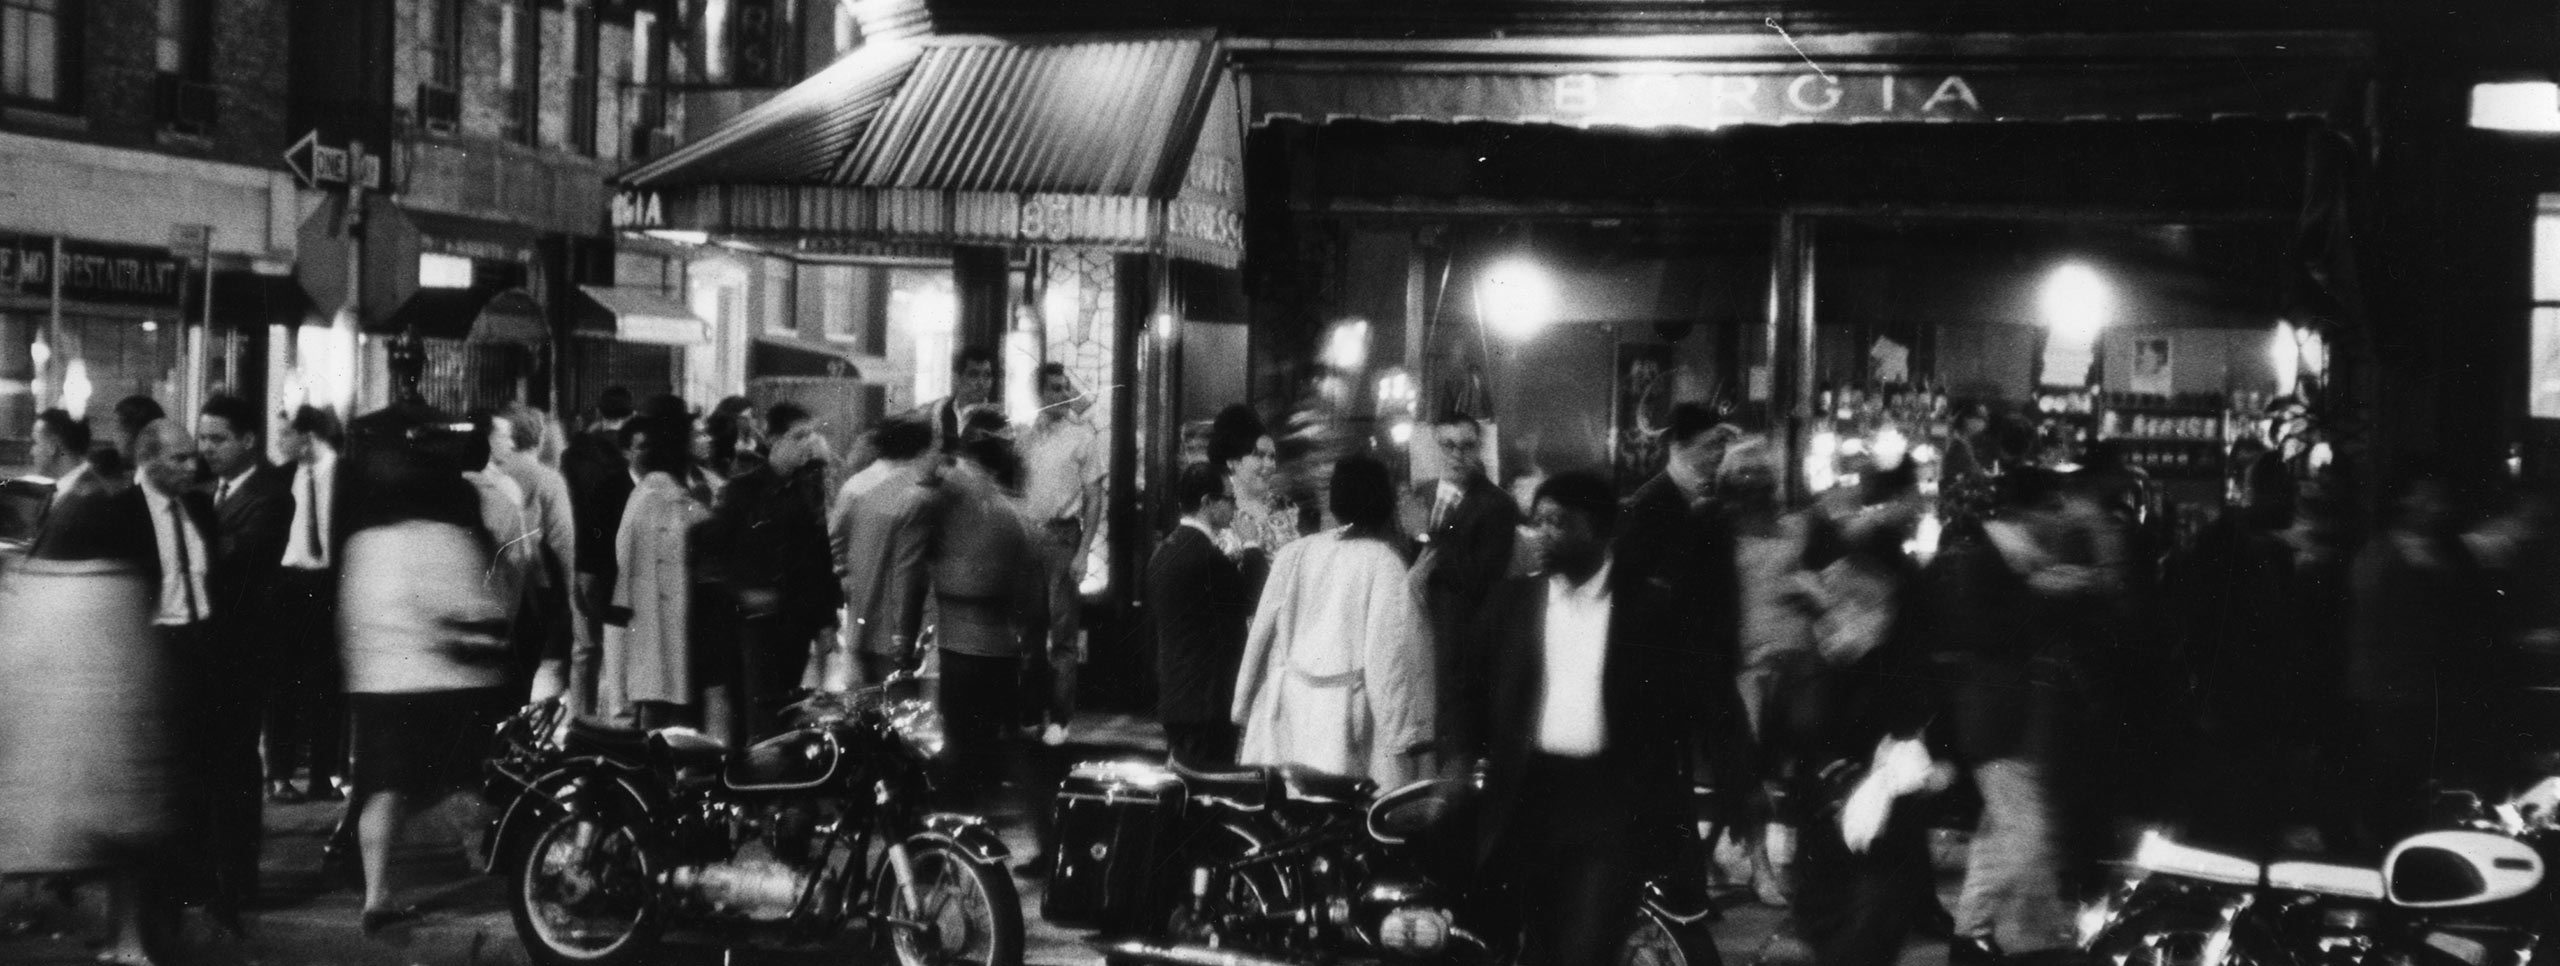 Photographie de Fred W. McDarrah d'une foule remplie de mouvement à l'extérieur du Caffe Borgia dans le village de Greenwich